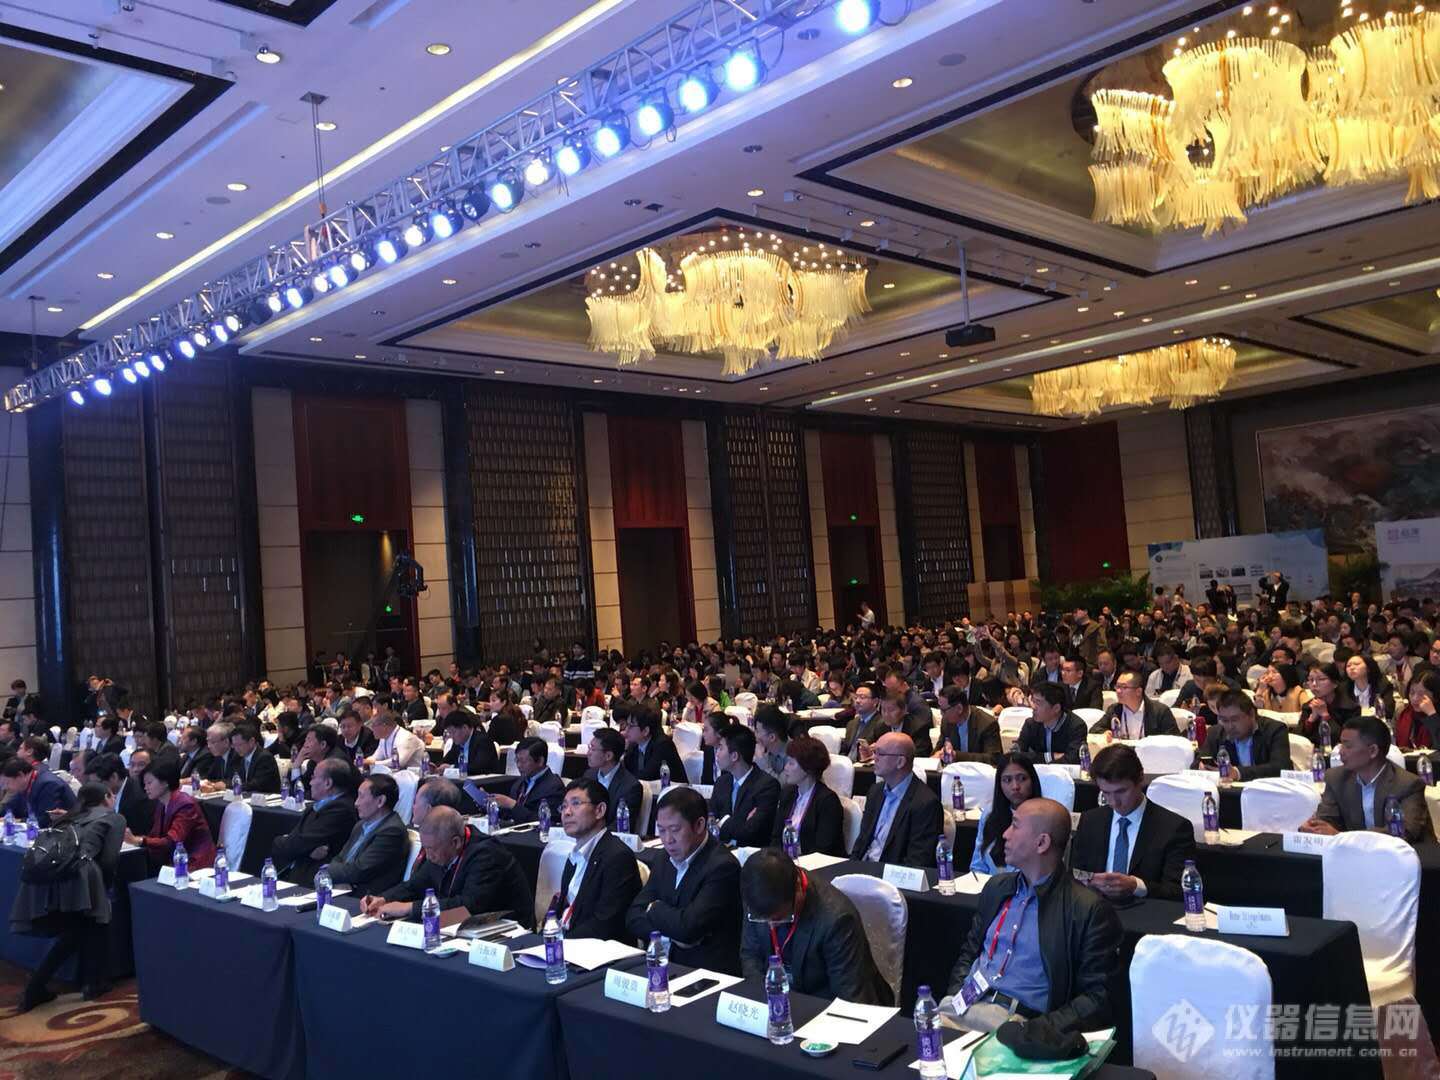 2018中国科学仪器发展年会(ACCSI 2018) 